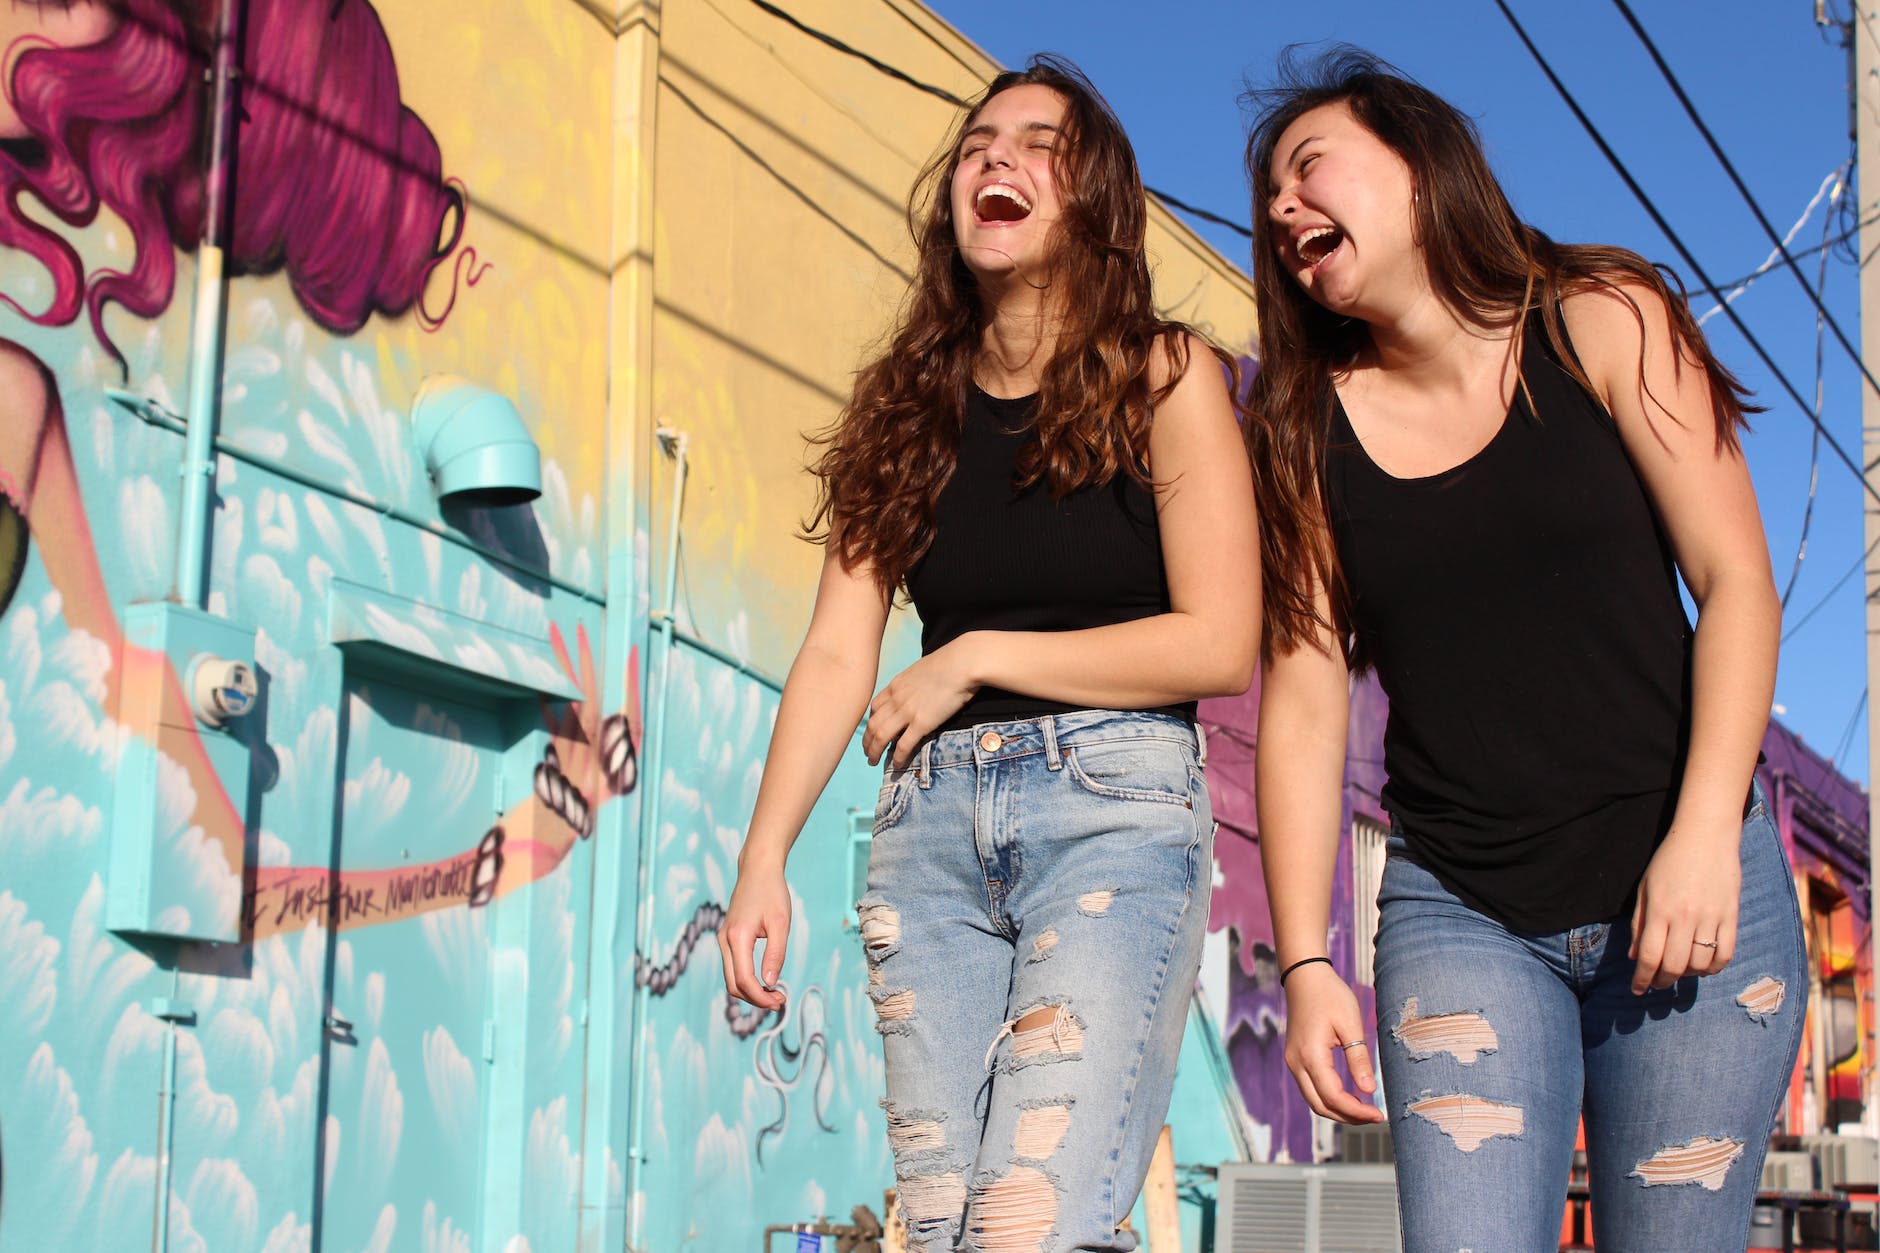 photo of two laughing women walking past graffiti wall